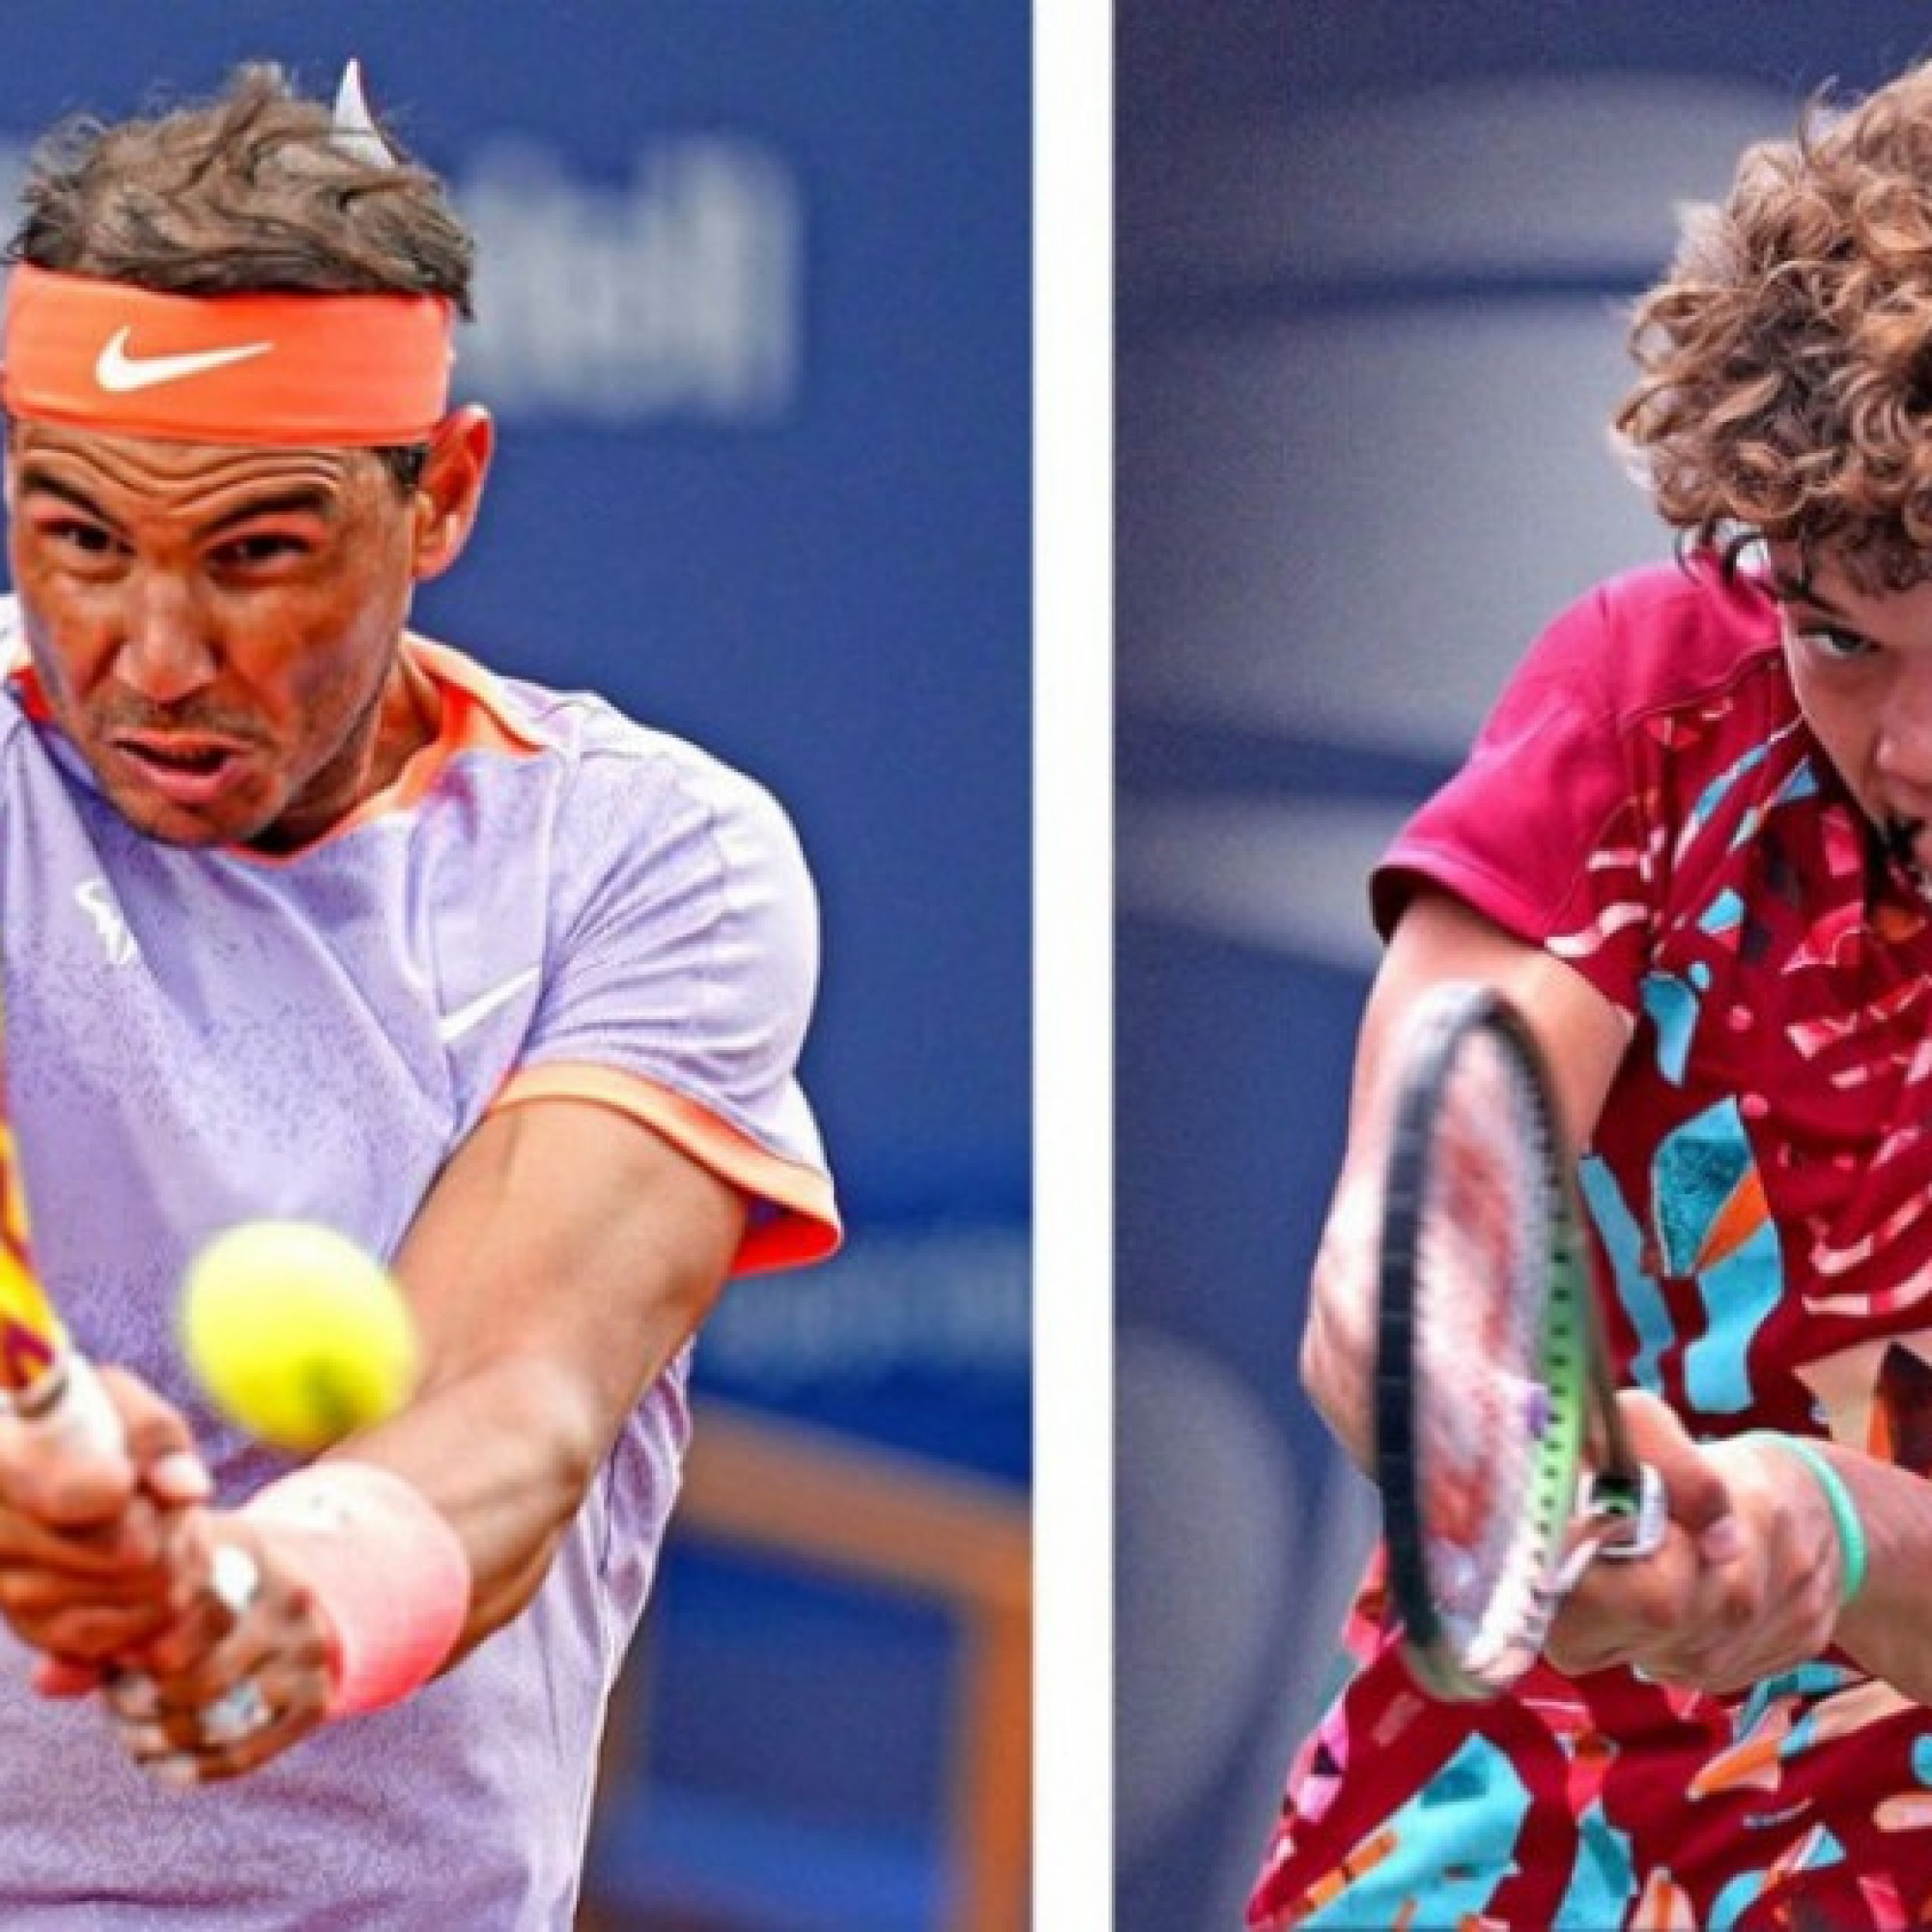  - Trực tiếp tennis Nadal - Blanch: Nadal thừa nhận chưa hồi phục 100% (Madrid Open)